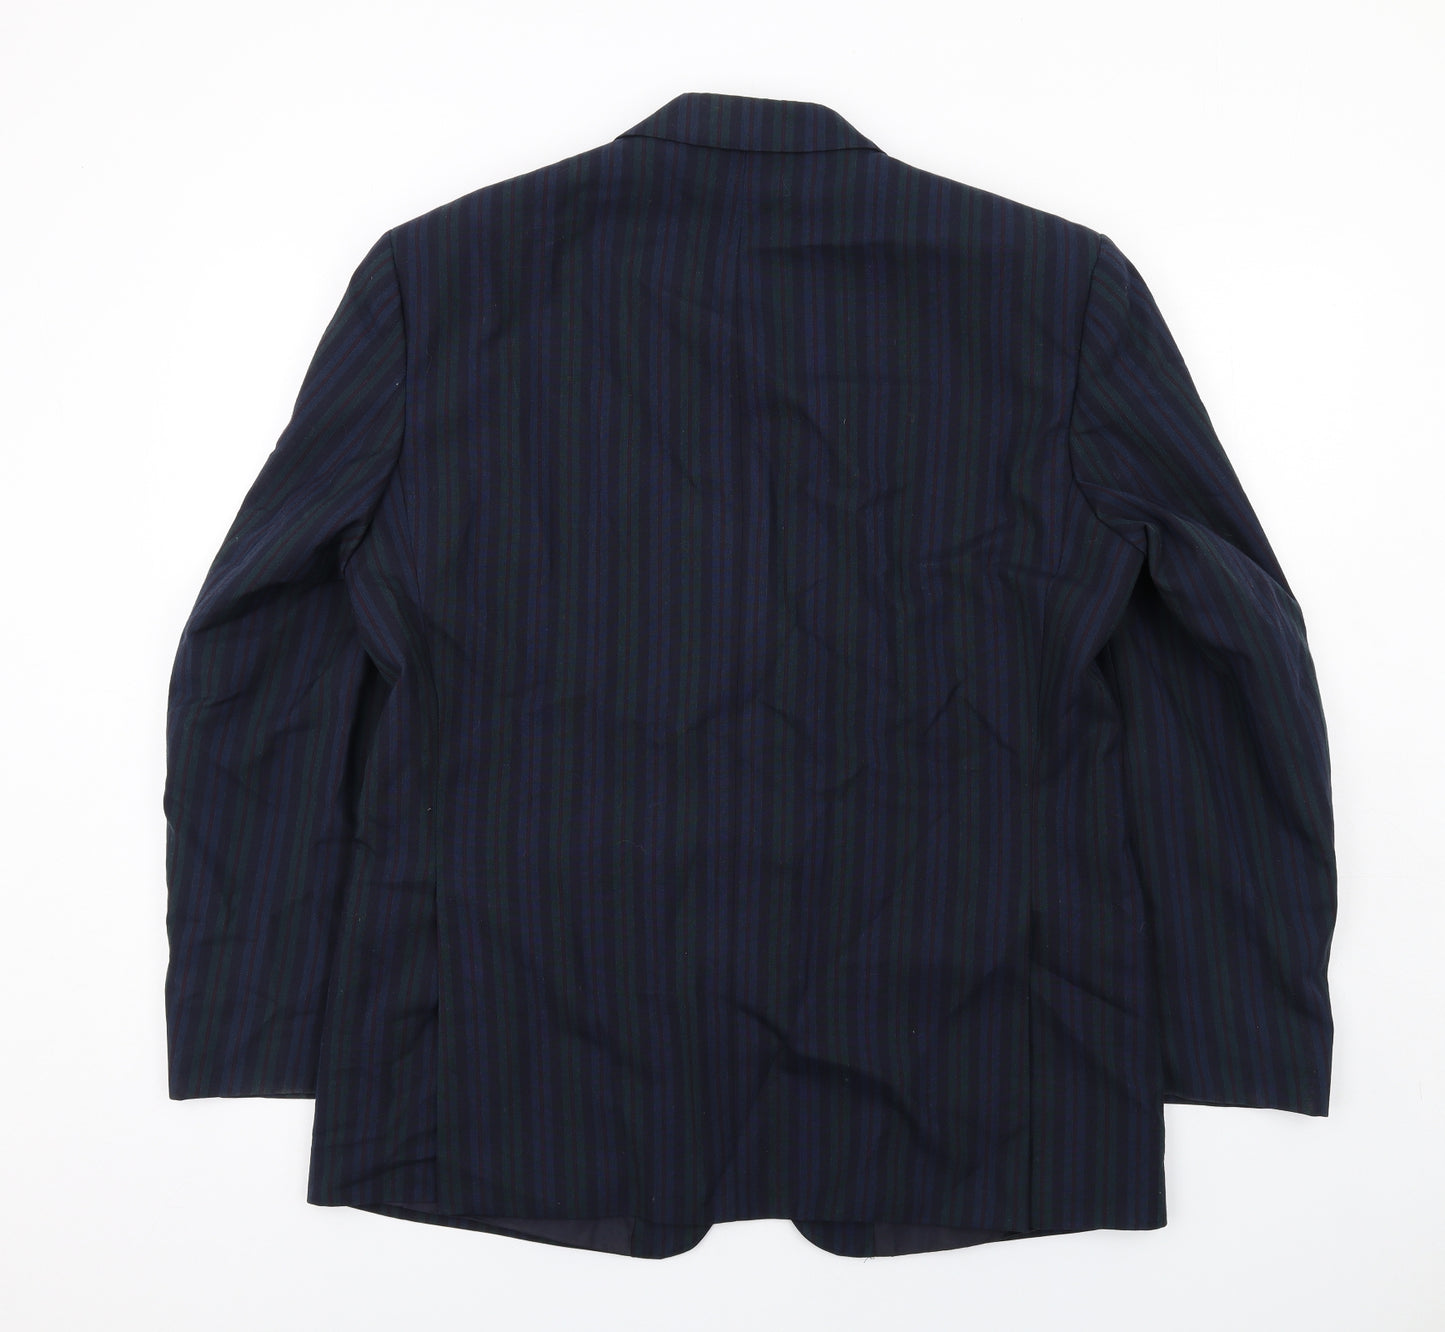 Brook Taverner Mens Multicoloured Striped Polyester Jacket Suit Jacket Size 42 Regular